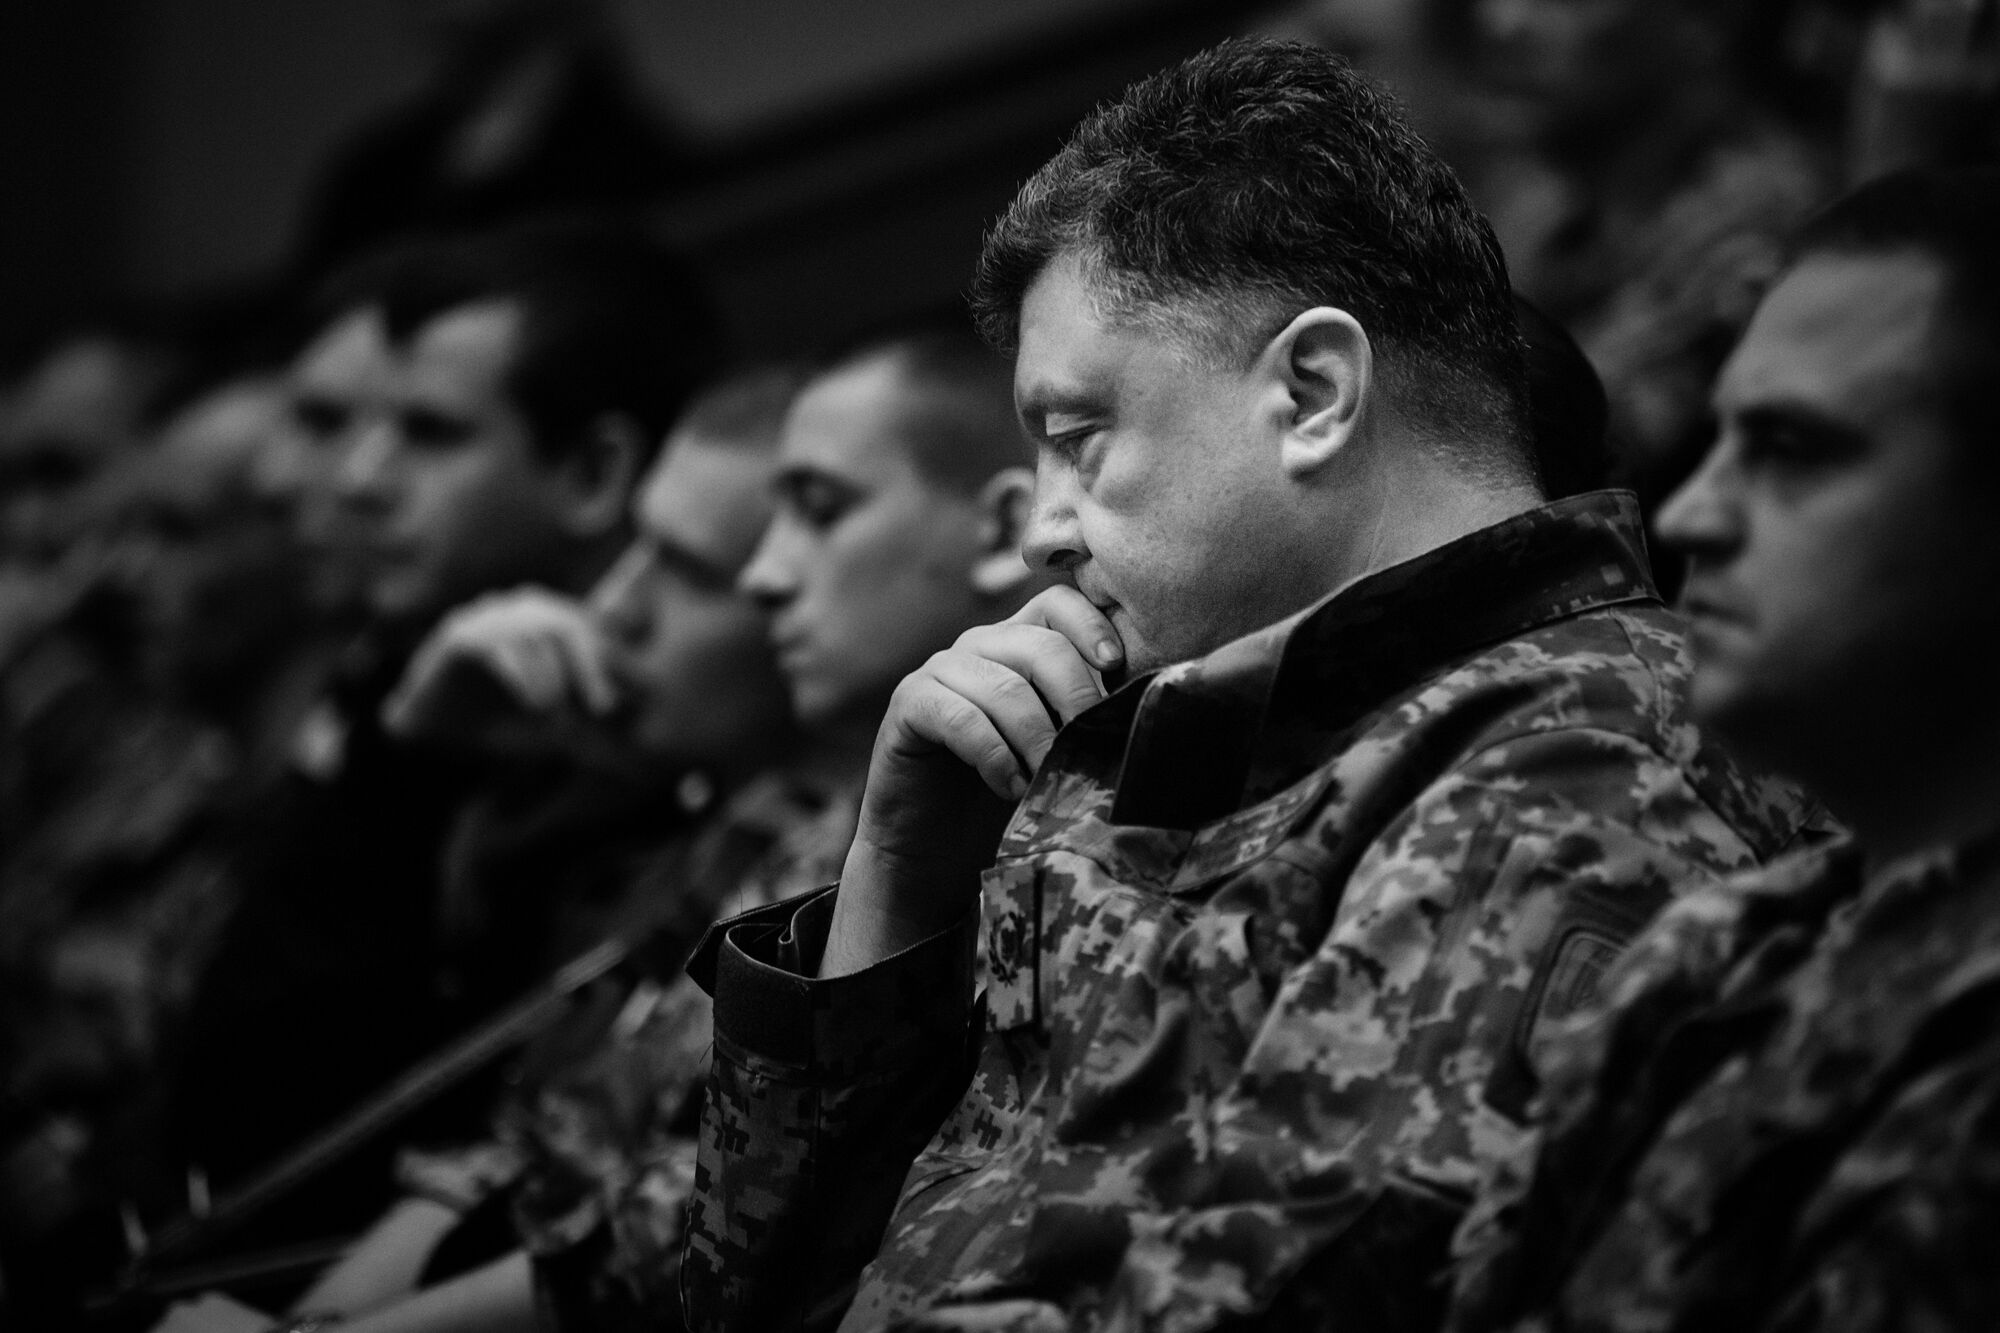 Премьерный показ фильма "Аэропорт" о том, как проходила оборона терминала в Донецке. Киев, 11.05.2015